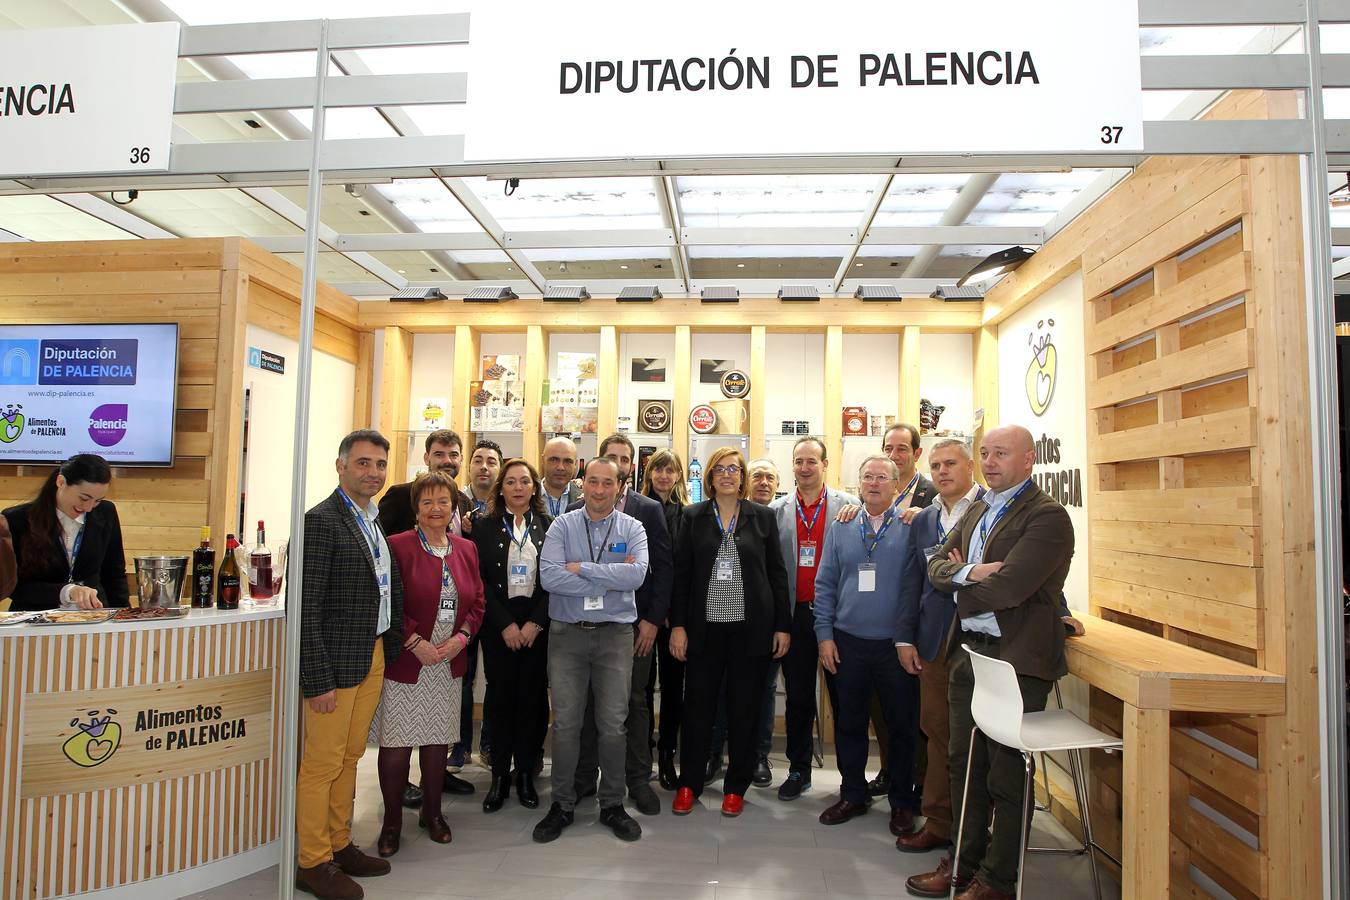 La presidenta de la Diputación de Palencia, Ángeles Armisén, visita el expositor de Palencia.